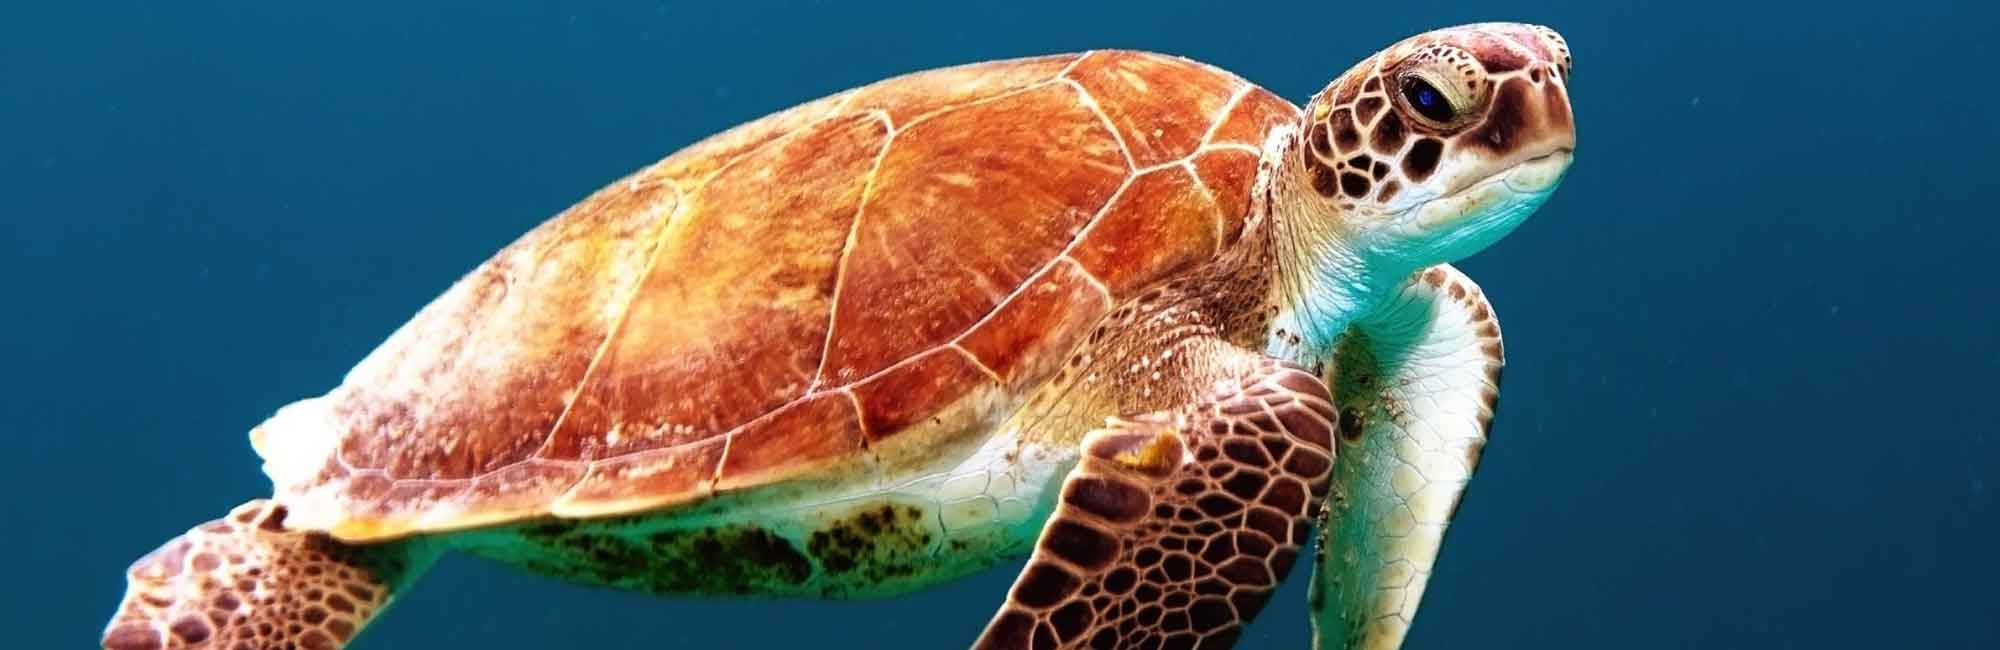 żółw pływający w oceanie